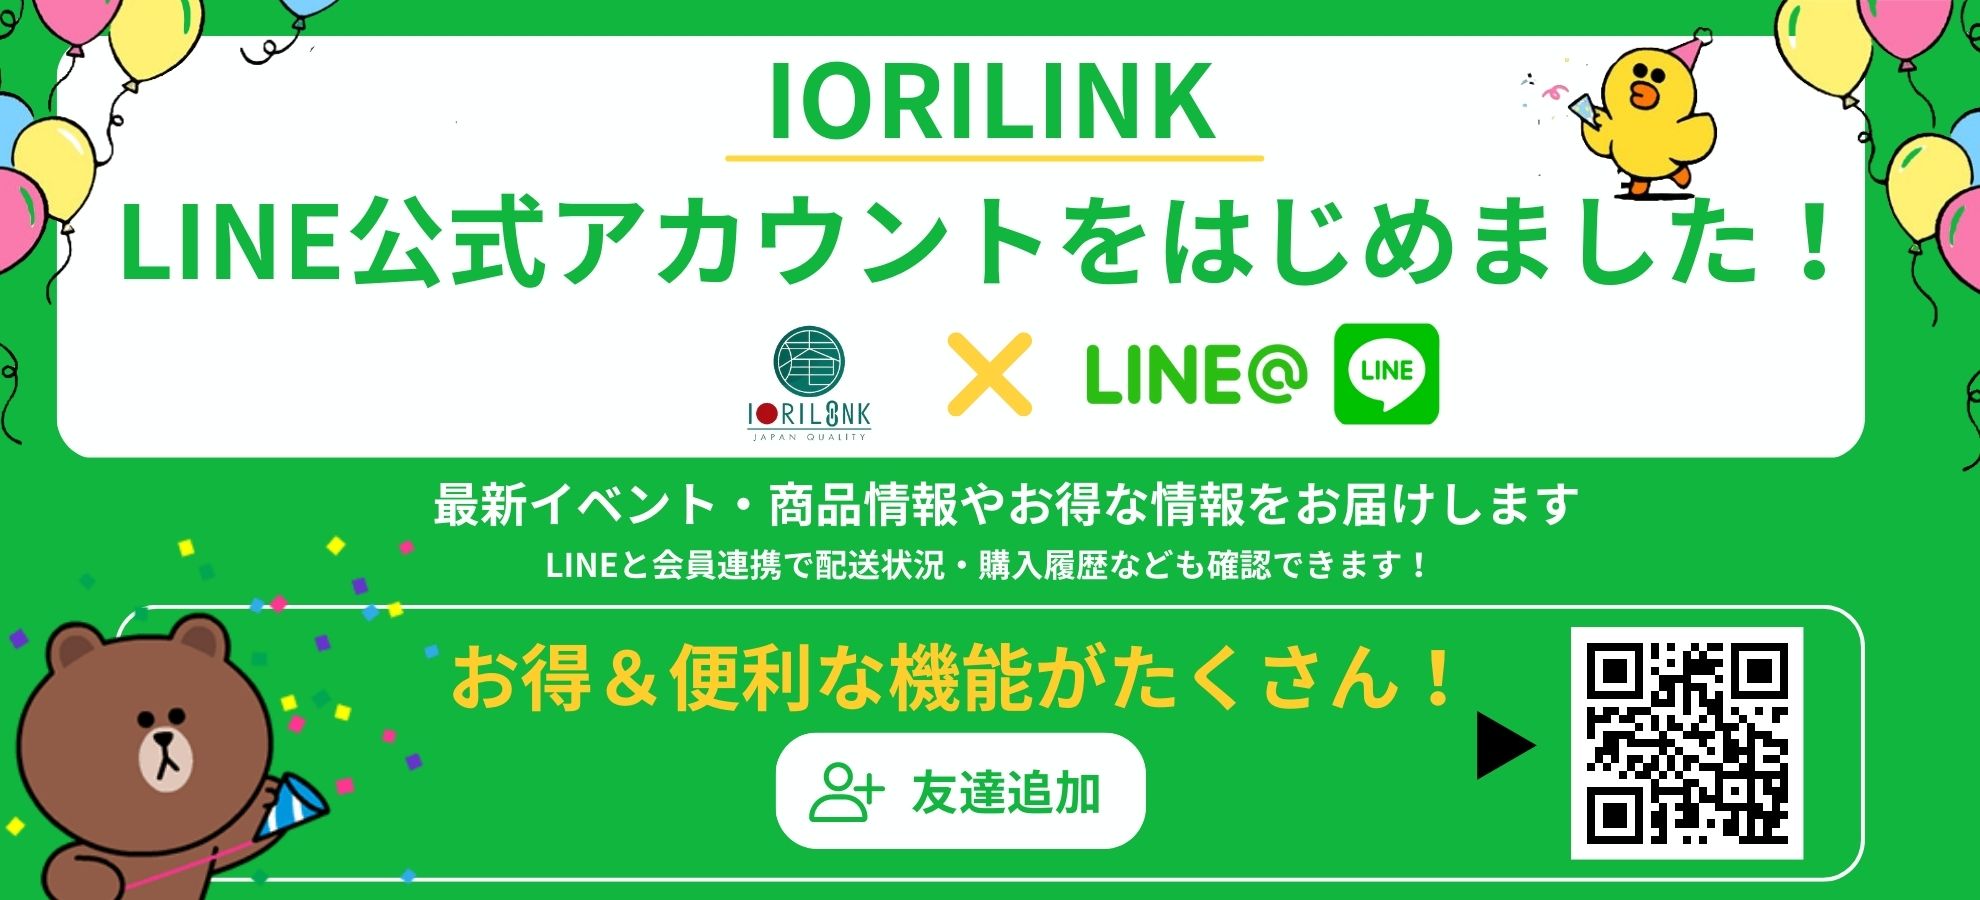 お知らせ】IORILINK LINE公式アカウント スタート☆彡